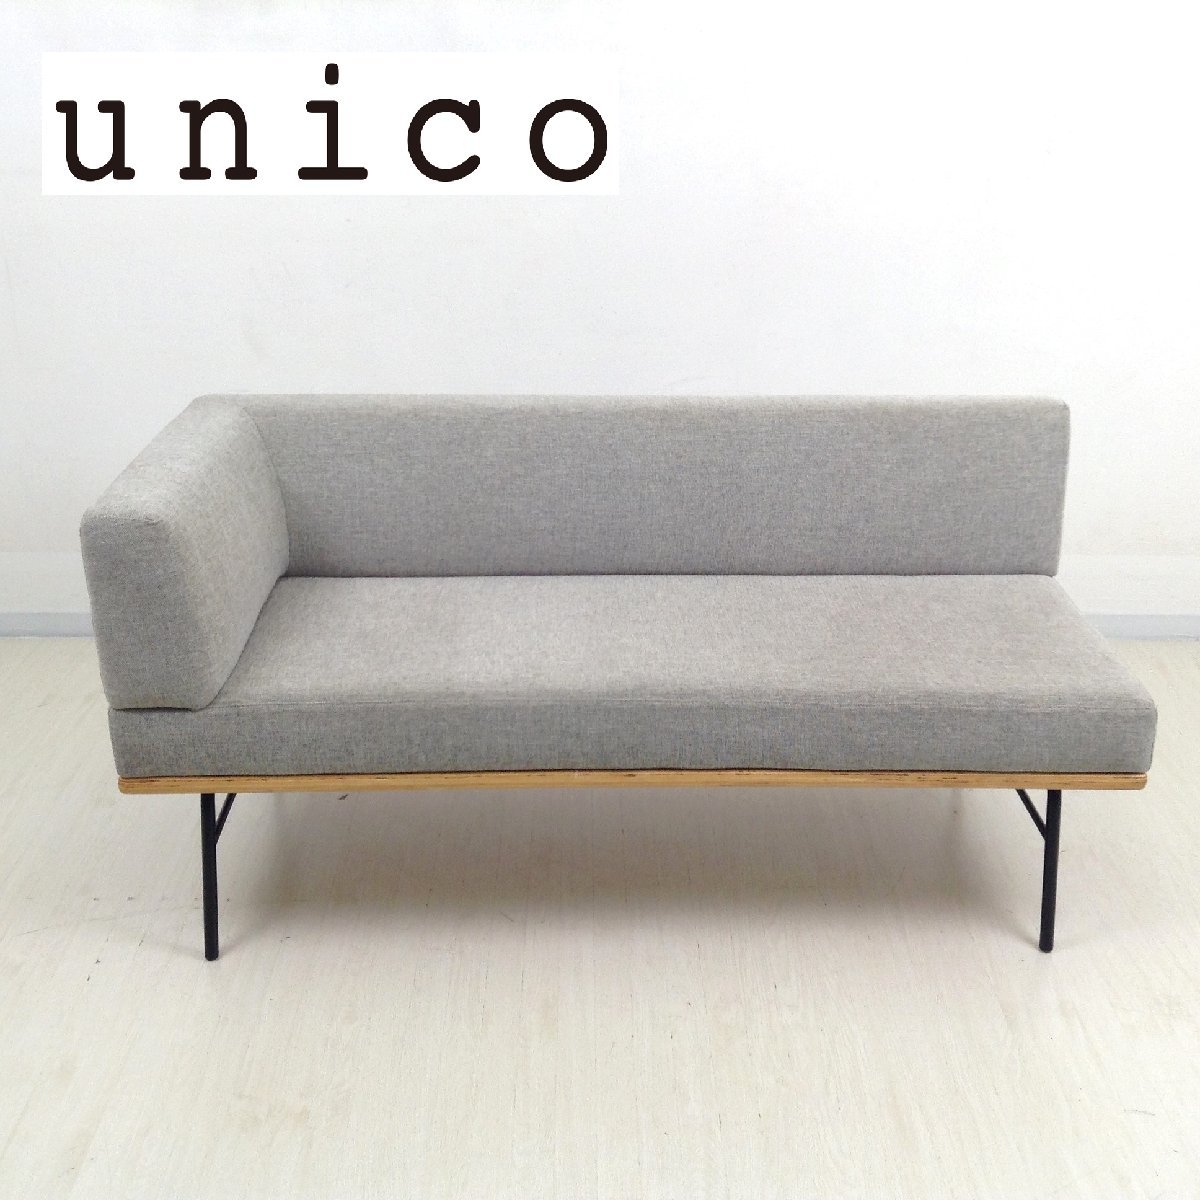 最上の品質な arm bench FUNEAT ウニコ unico 1109 L/R ベージュ系 2人